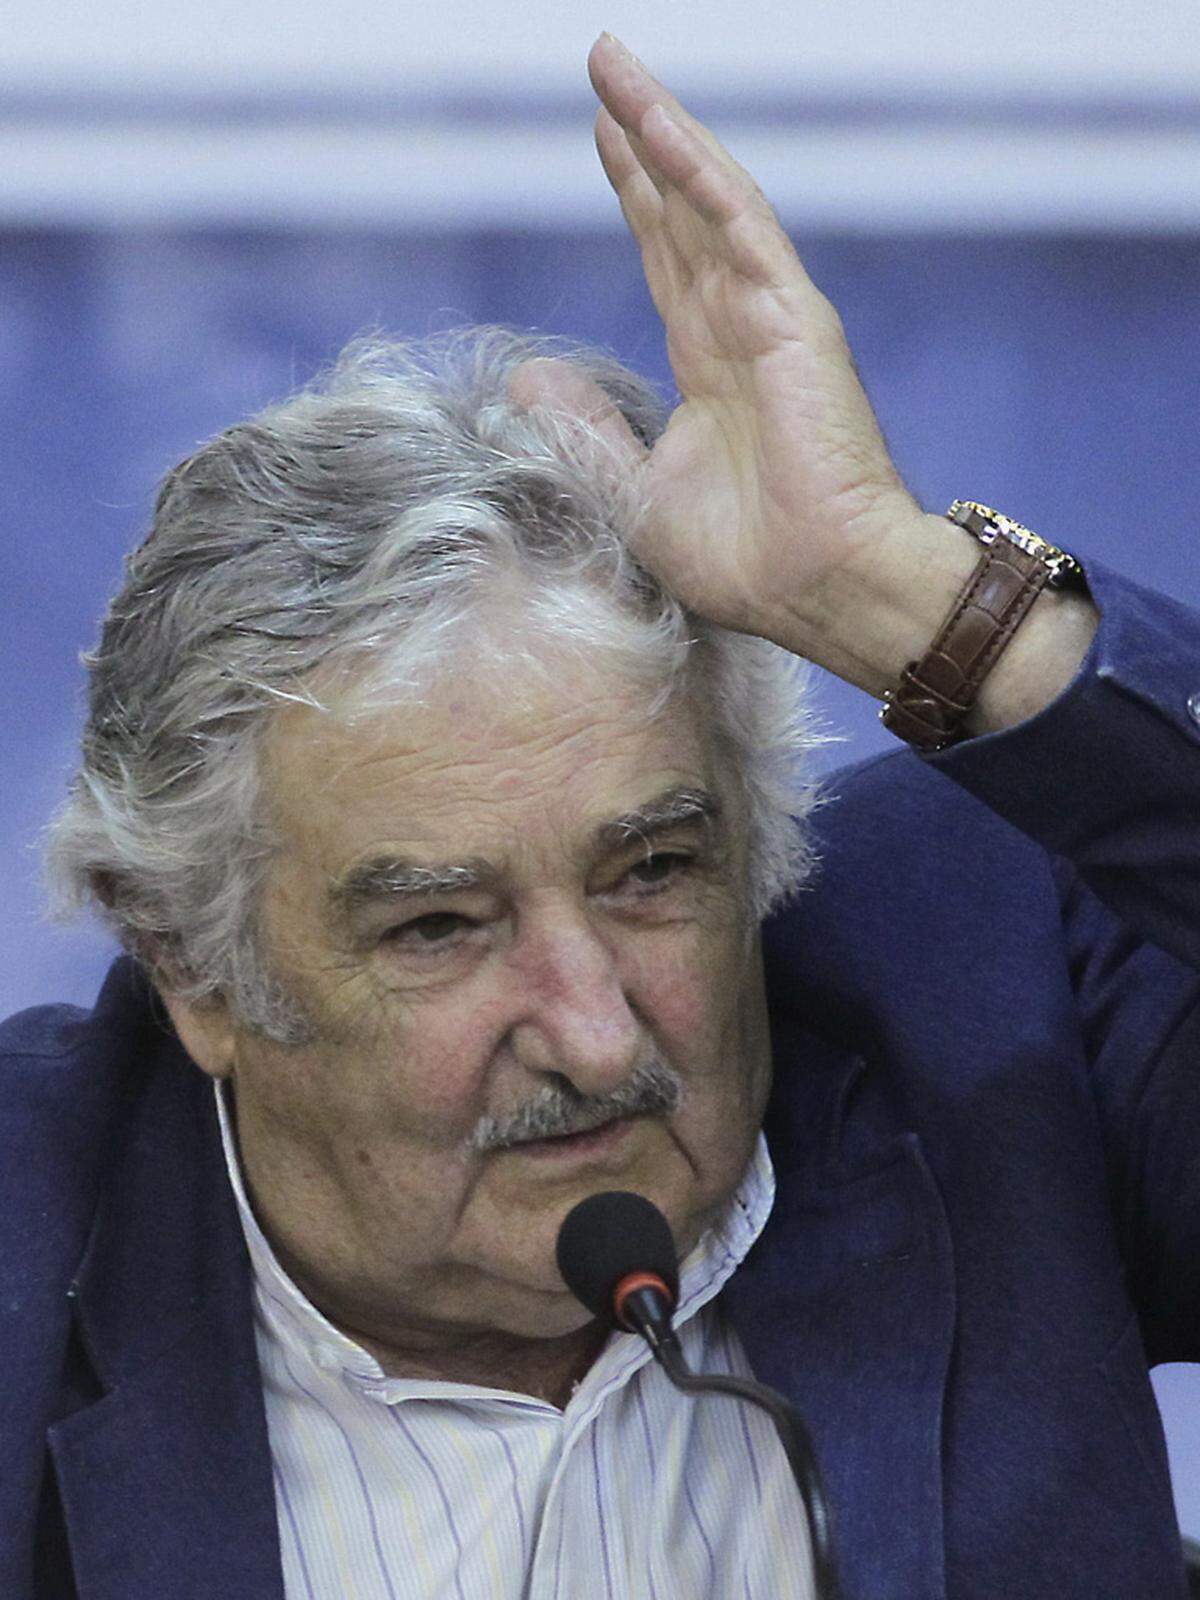 Der bereits 77-jährige José Mujicaist seit 2010 Präsident in Uruguay. Der früheren Guerillero saß nach einem Militärputsch insgesamt 15 Jahre in Haft. Mit einem sozialdemokratischen Programm will er Uruguay aus der Wirtschaftskrise führen.